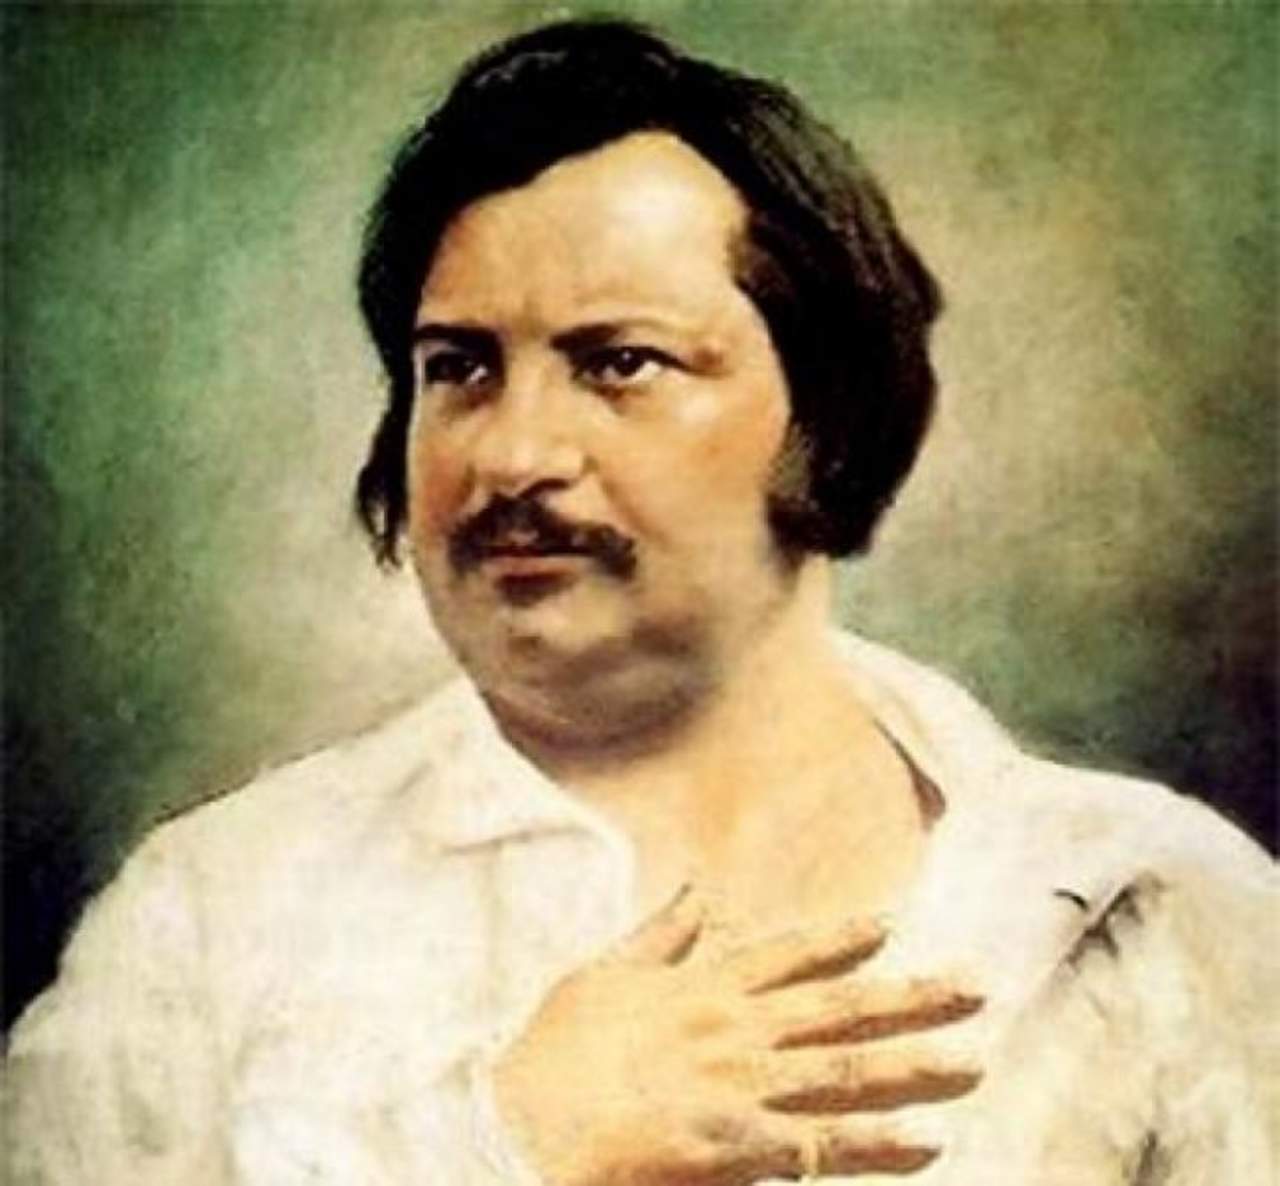 1799: Inician los días de Balzac, gran representante de la llamada novela realista del siglo XIX